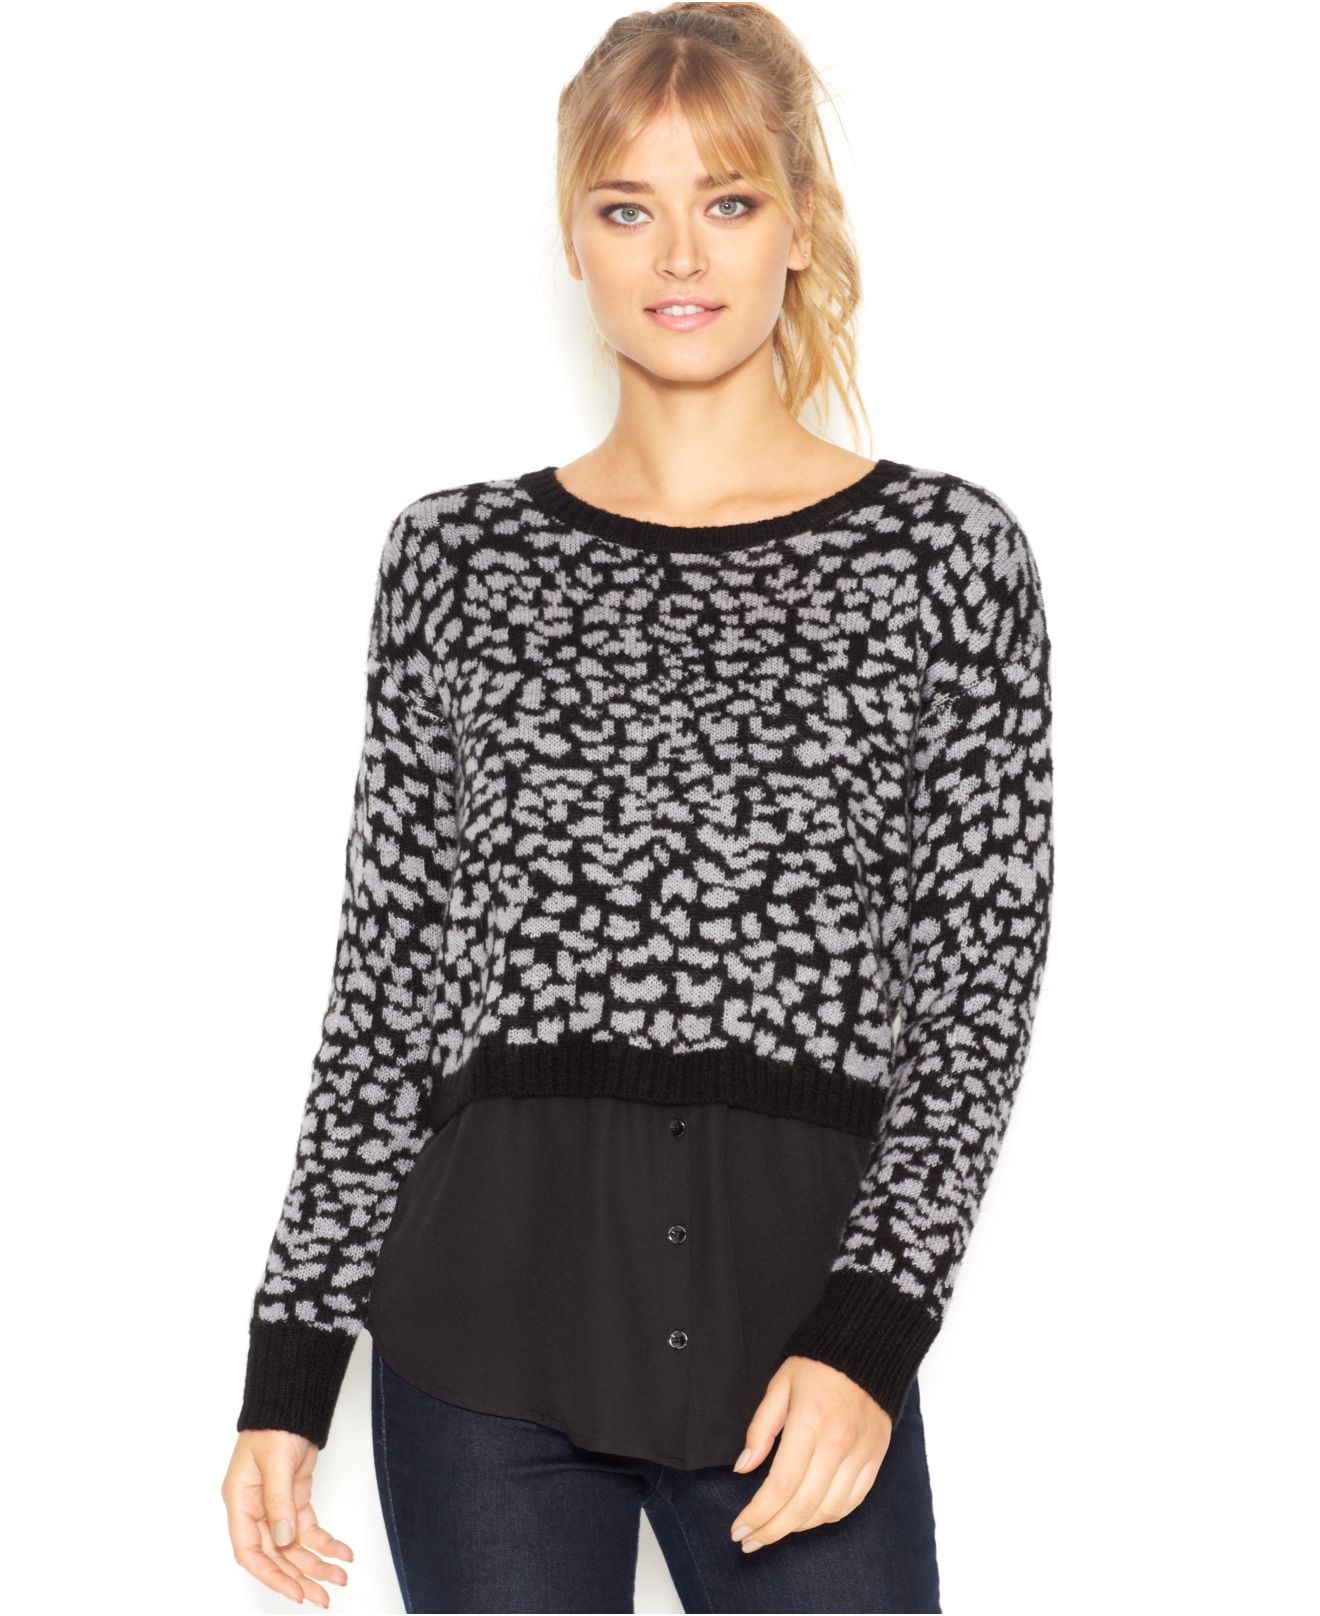 Lyst - Kensie Long-sleeve Layered-look Sweater in Black